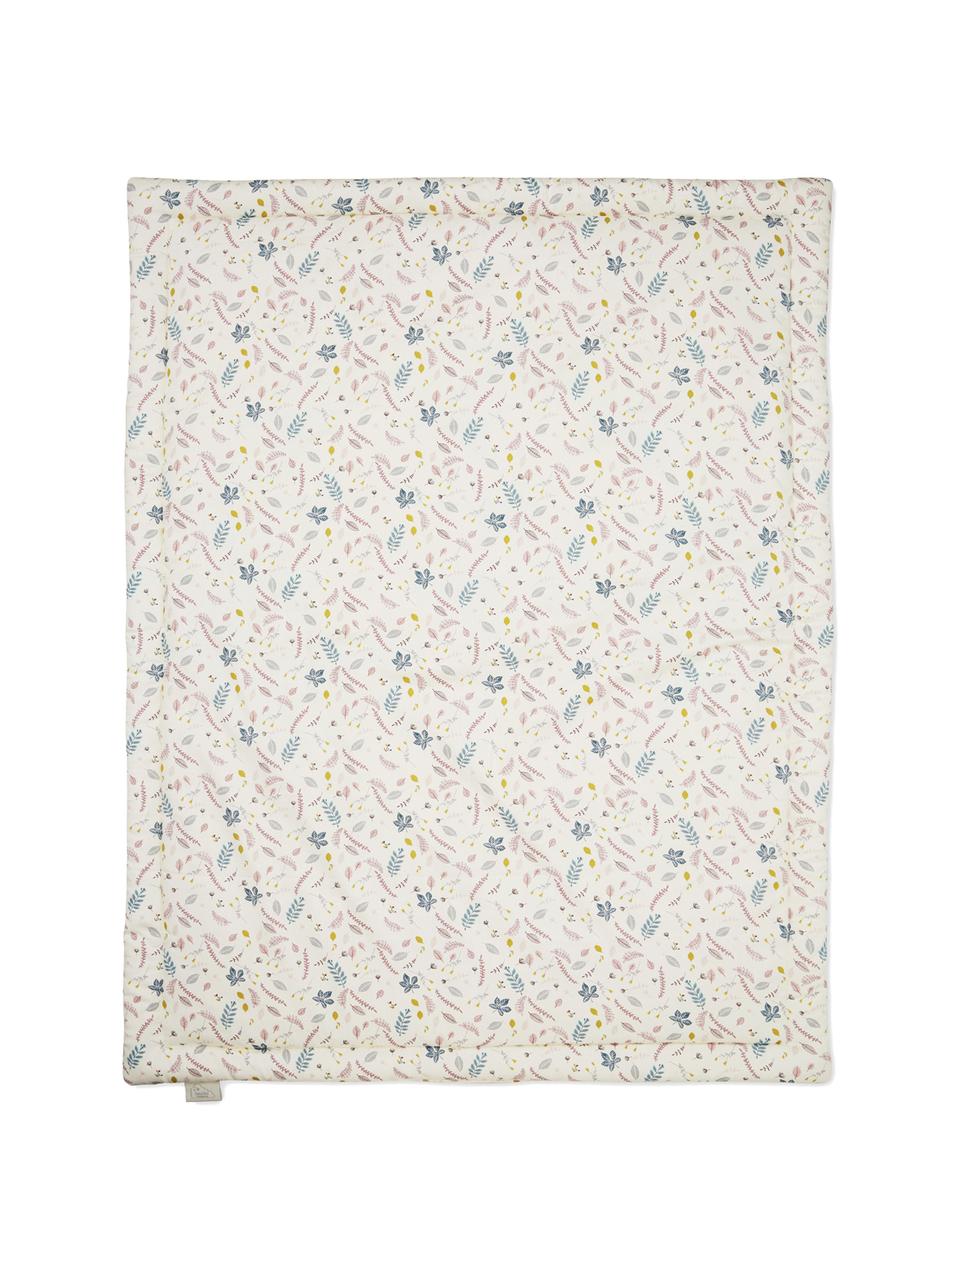 Couverture en coton bio Pressed Leaves, Rose, blanc crème, multicolore, imprimé, larg. 90 x long. 120 cm